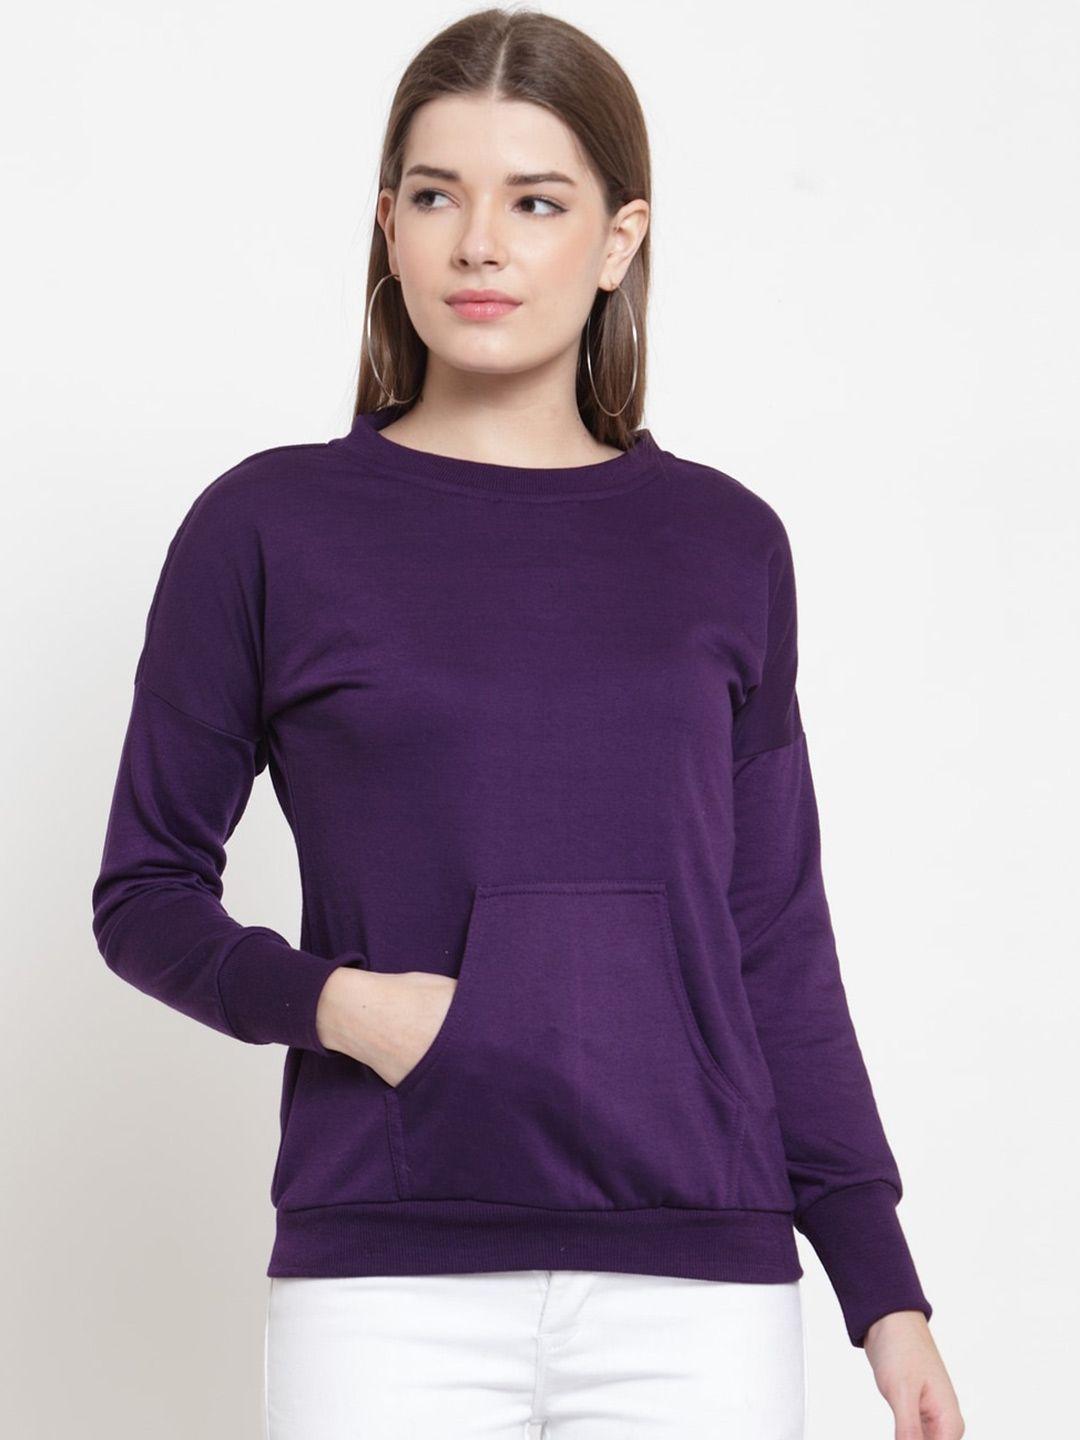 baesd women purple sweatshirt